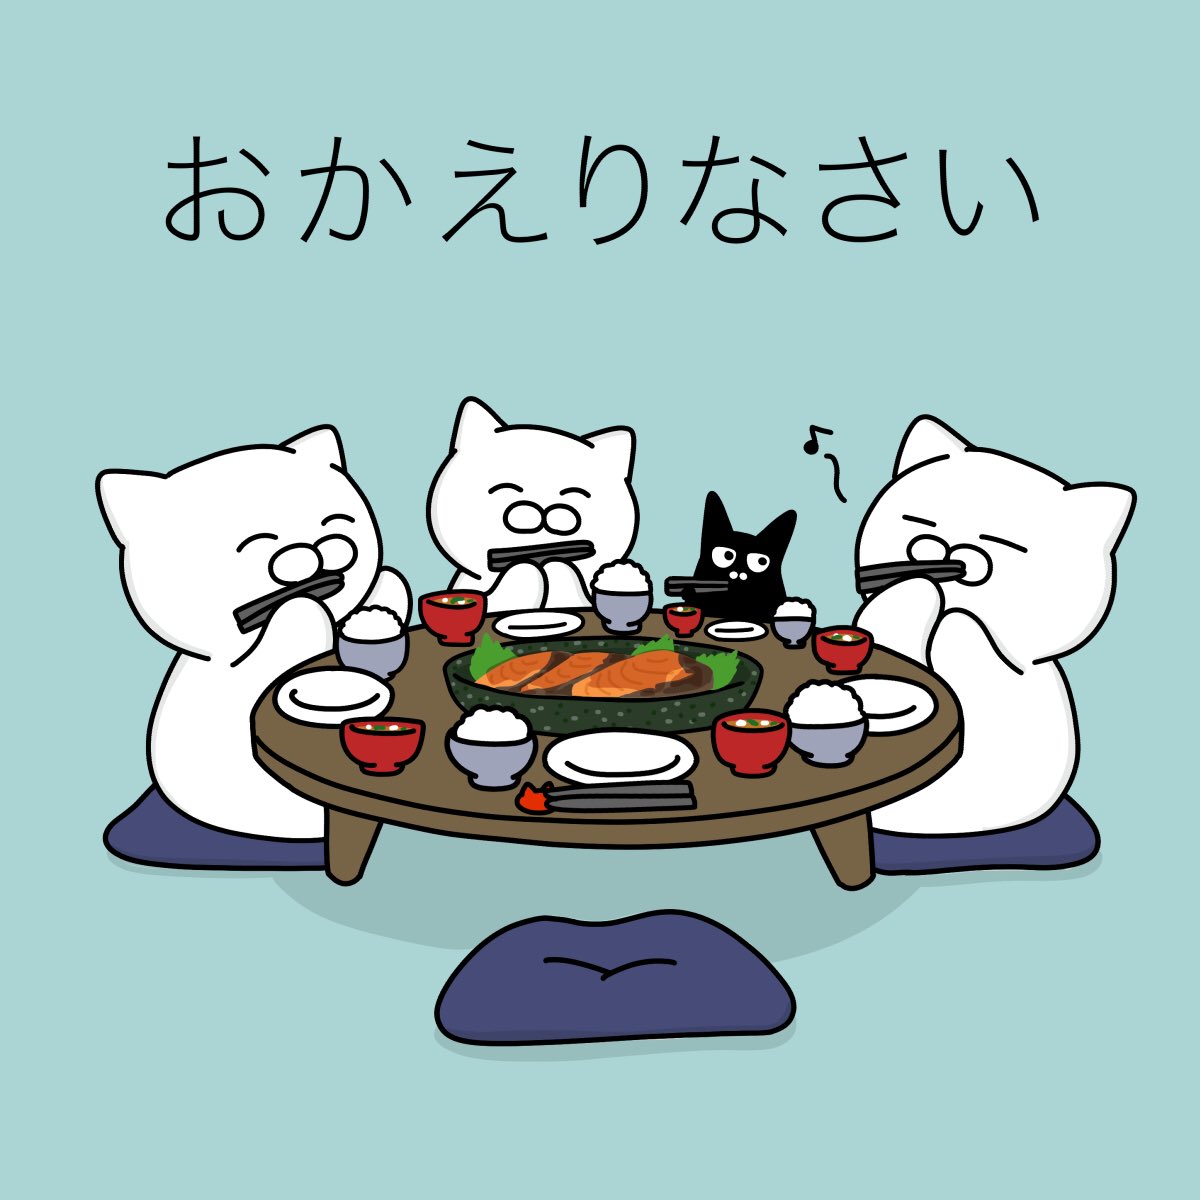 chopsticks no humans cat food bowl eating table  illustration images